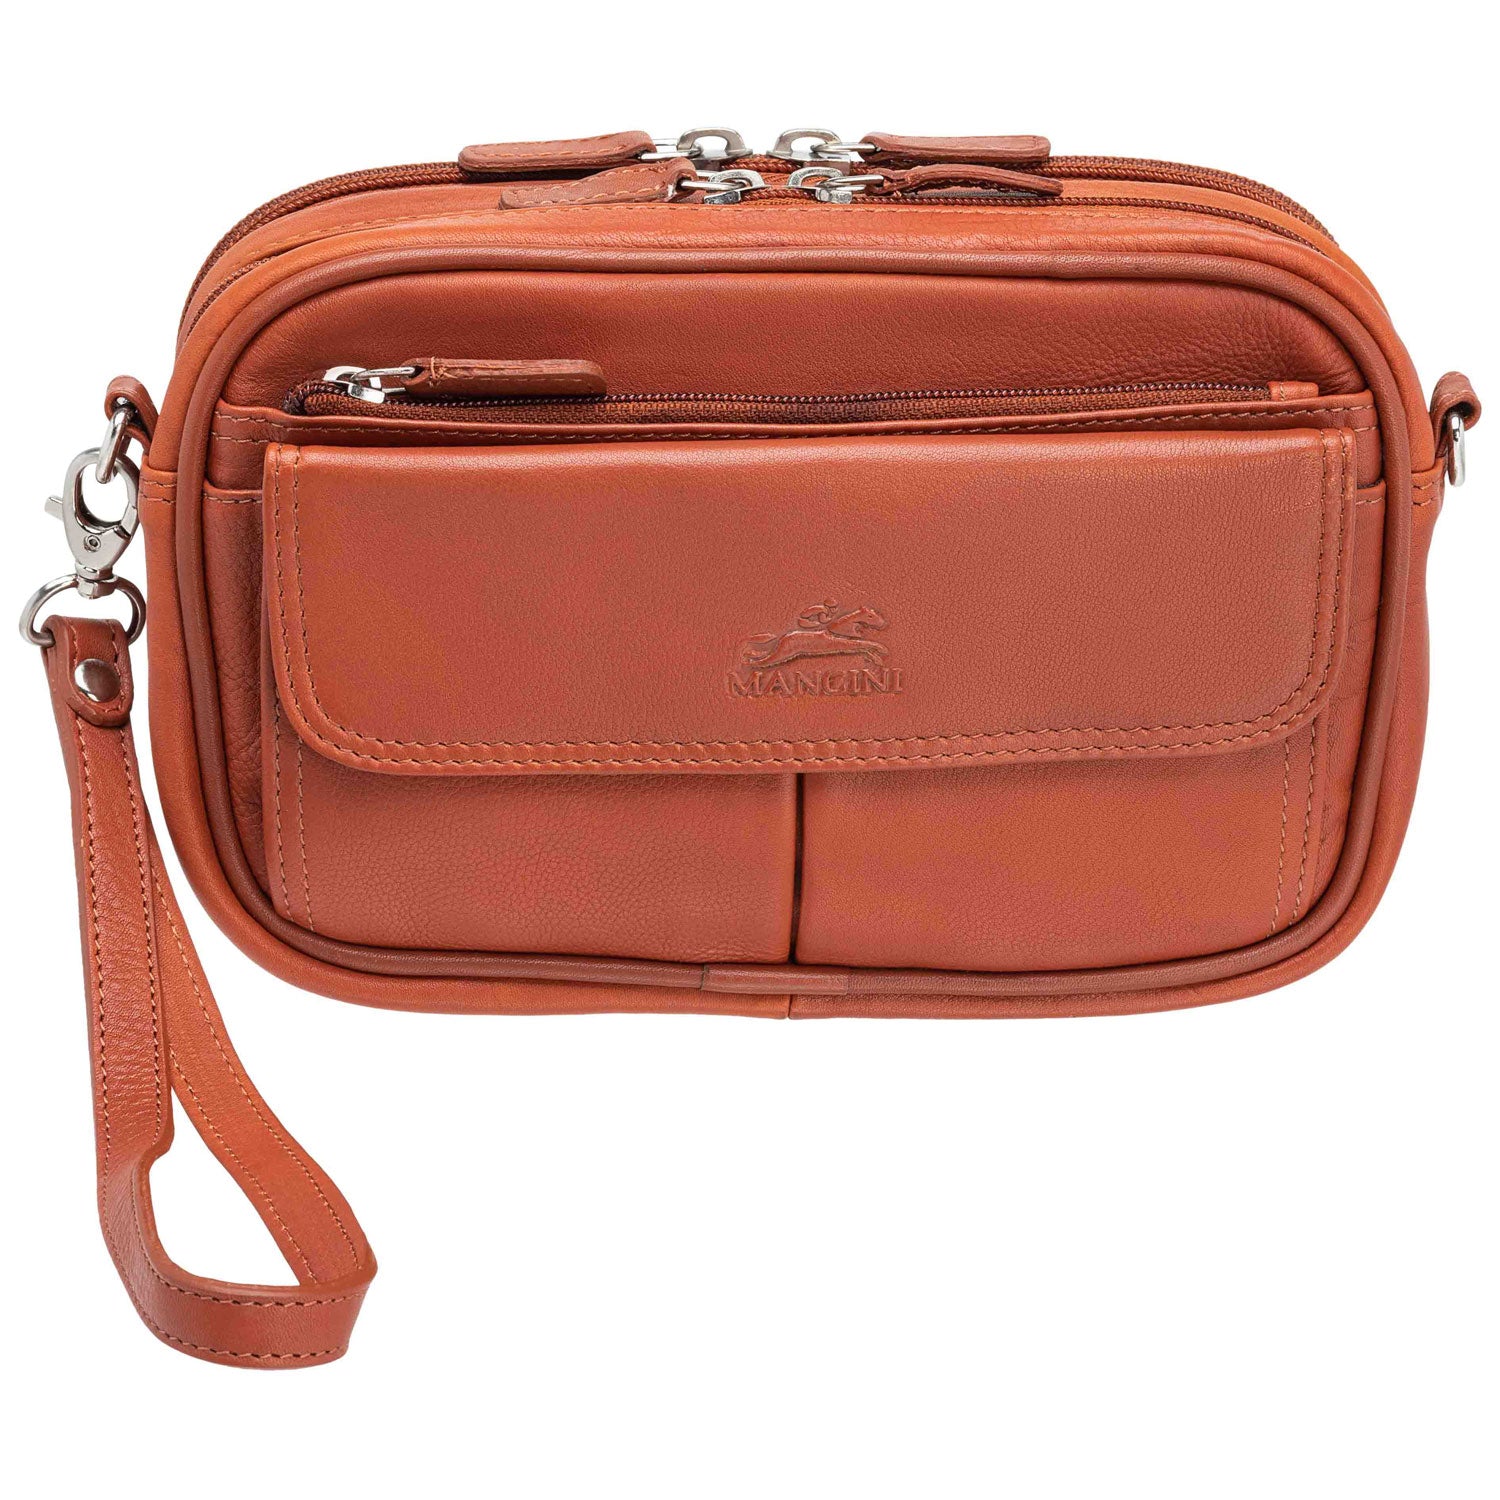 Mancini Leather Compact Unisex Bag, 8" x 3" x 5.5", Cognac